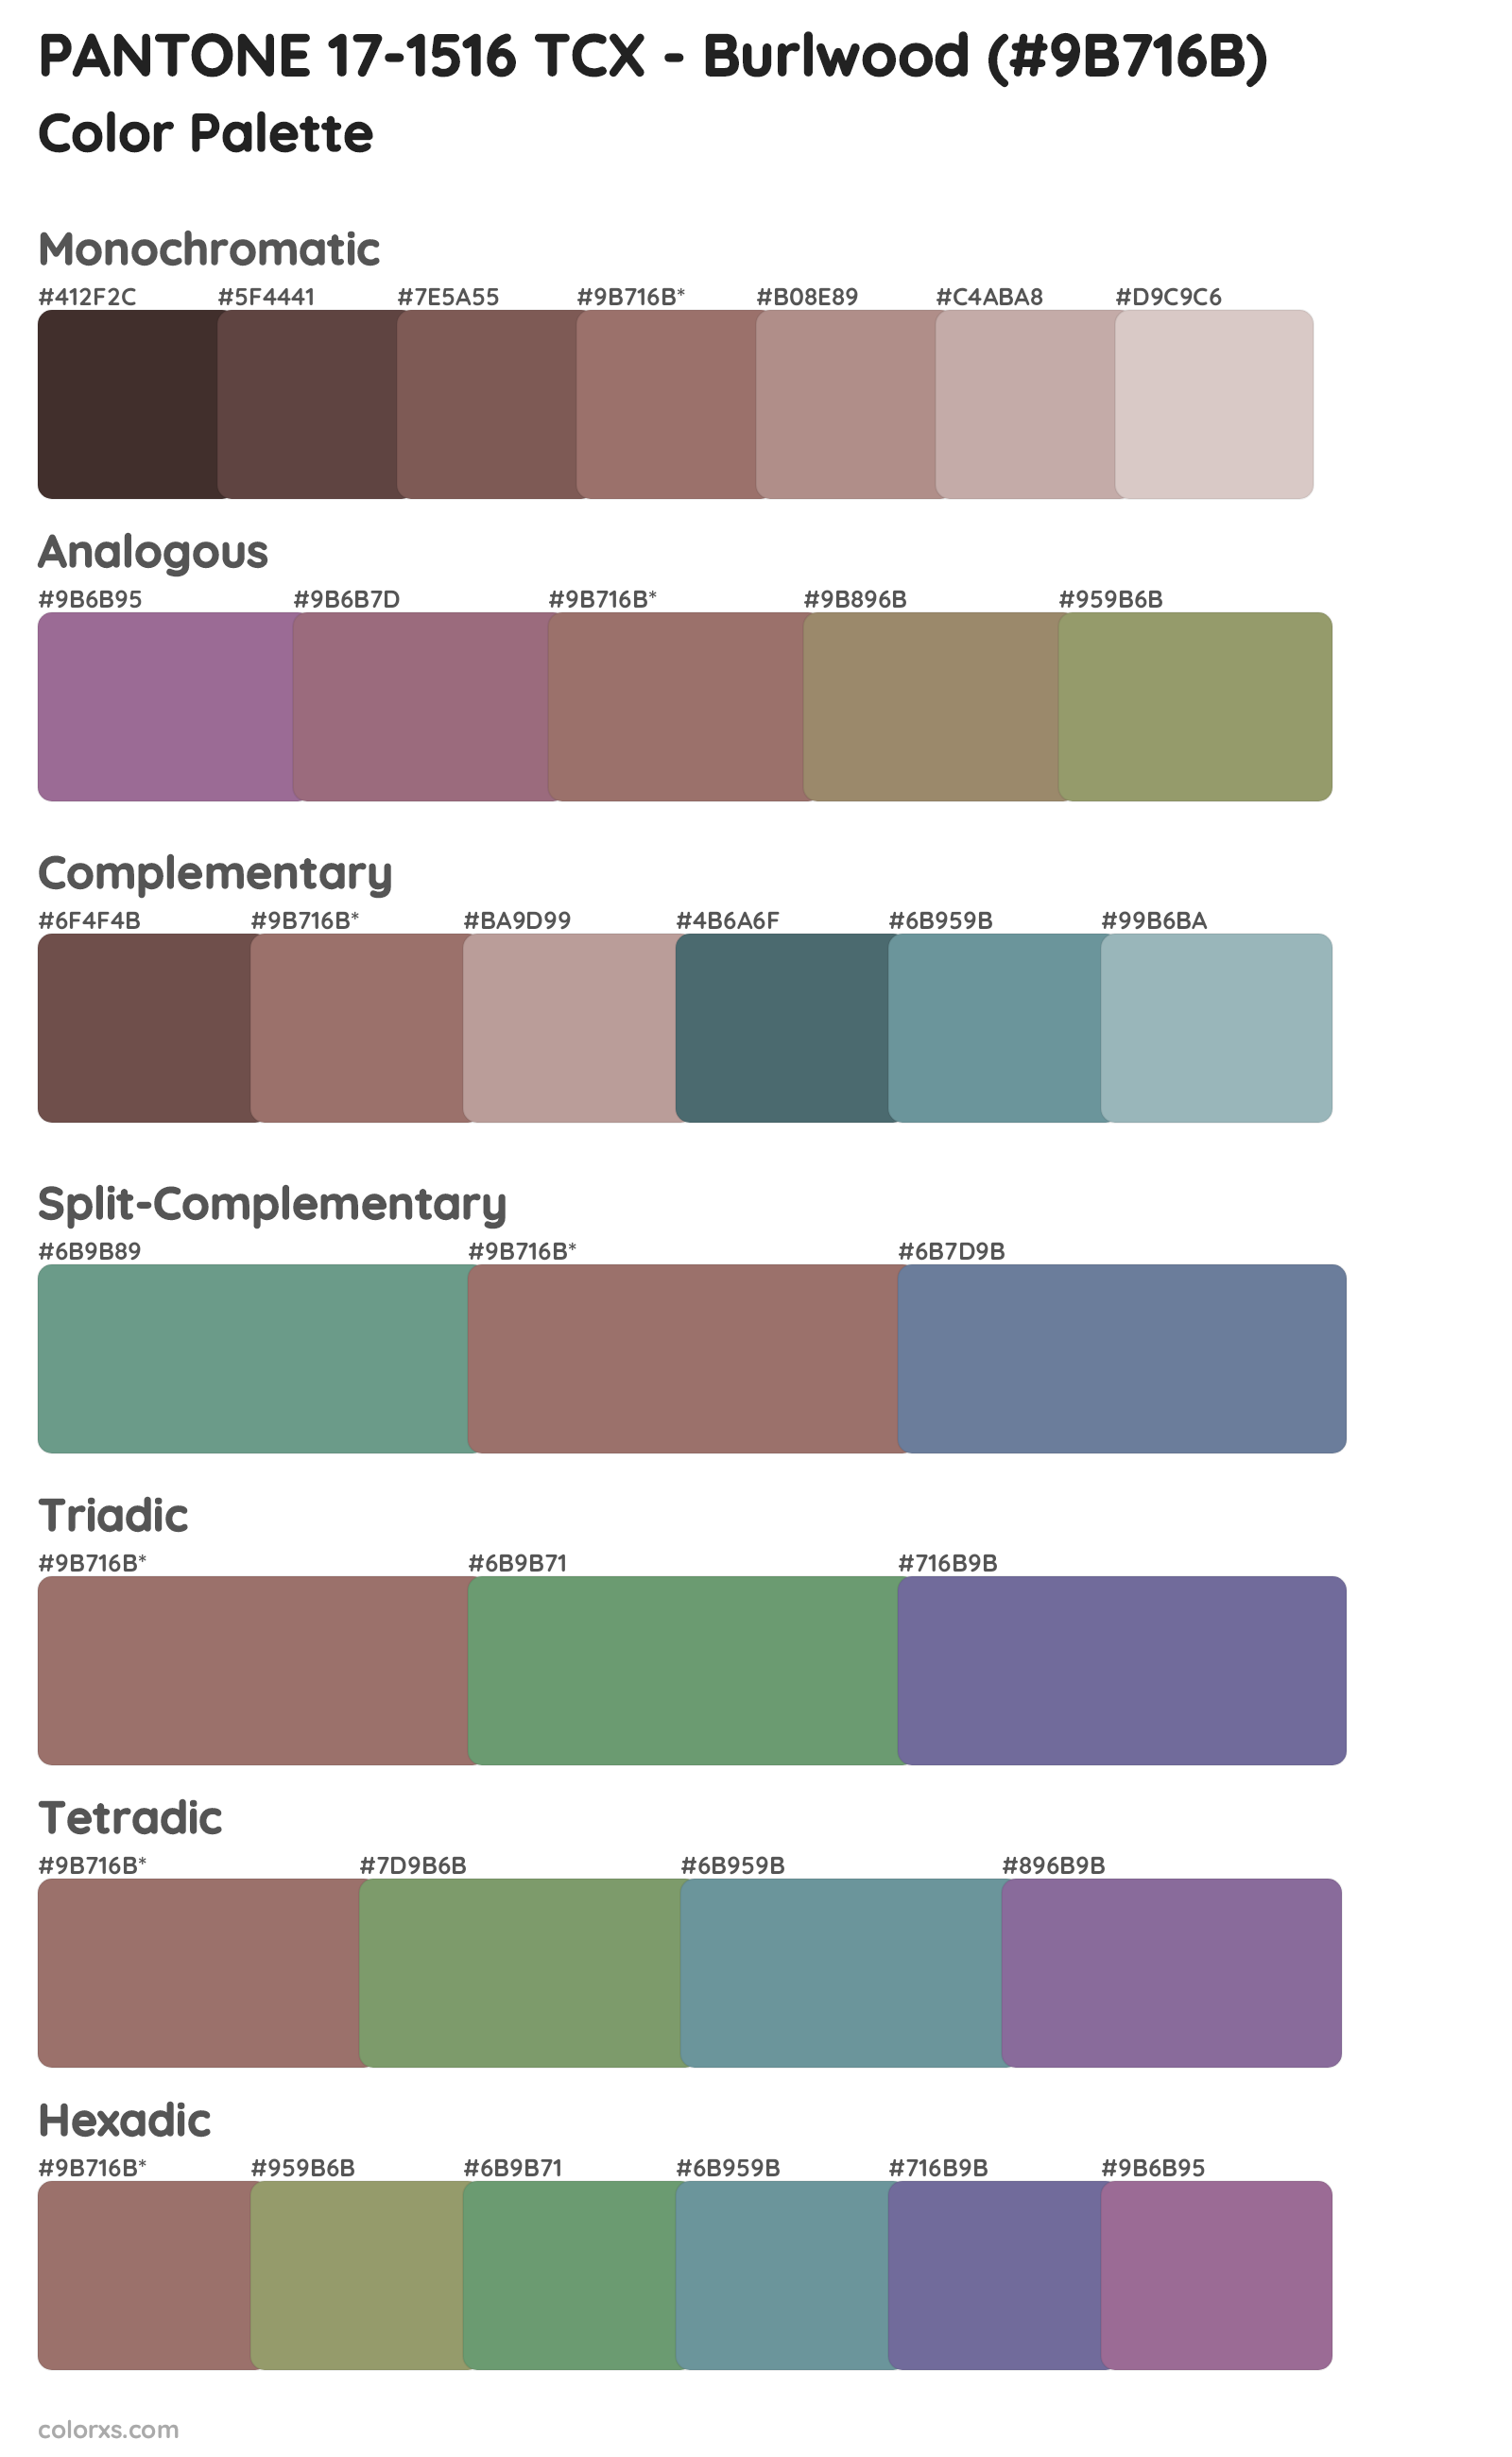 PANTONE 17-1516 TCX - Burlwood Color Scheme Palettes